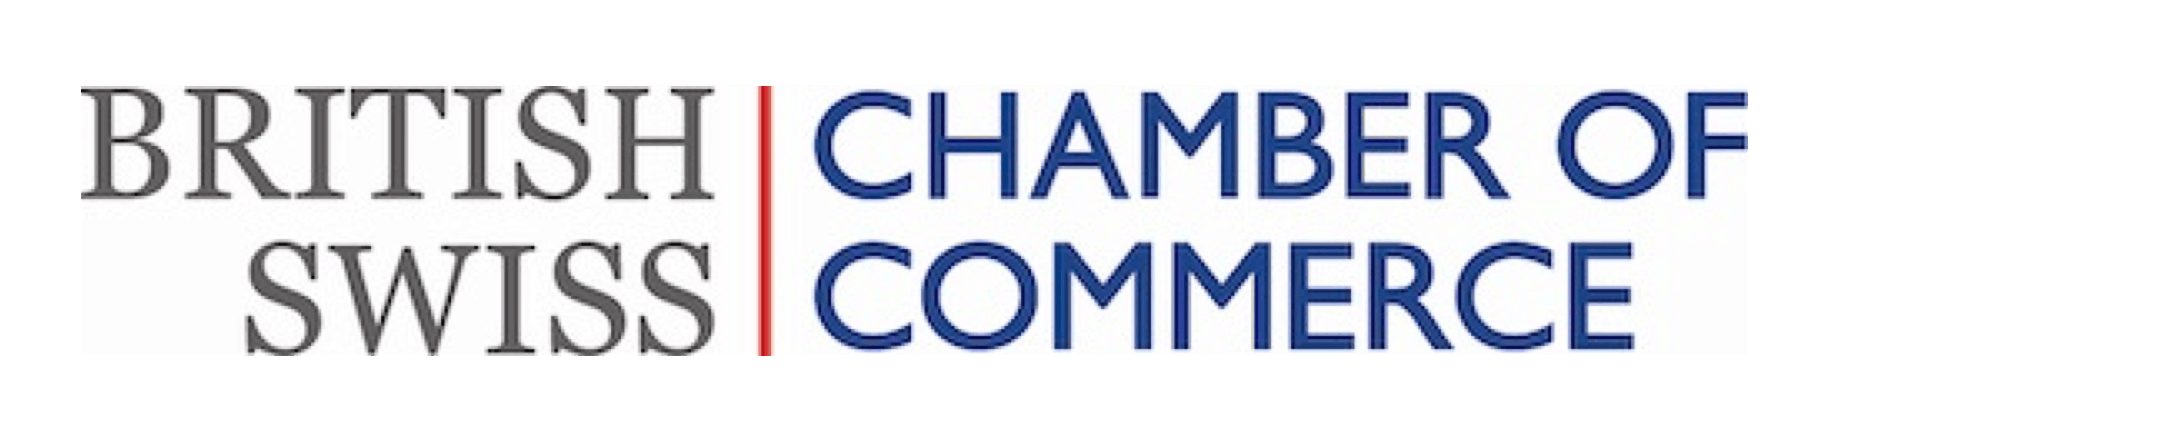 British-Swiss Chamber of Commerce